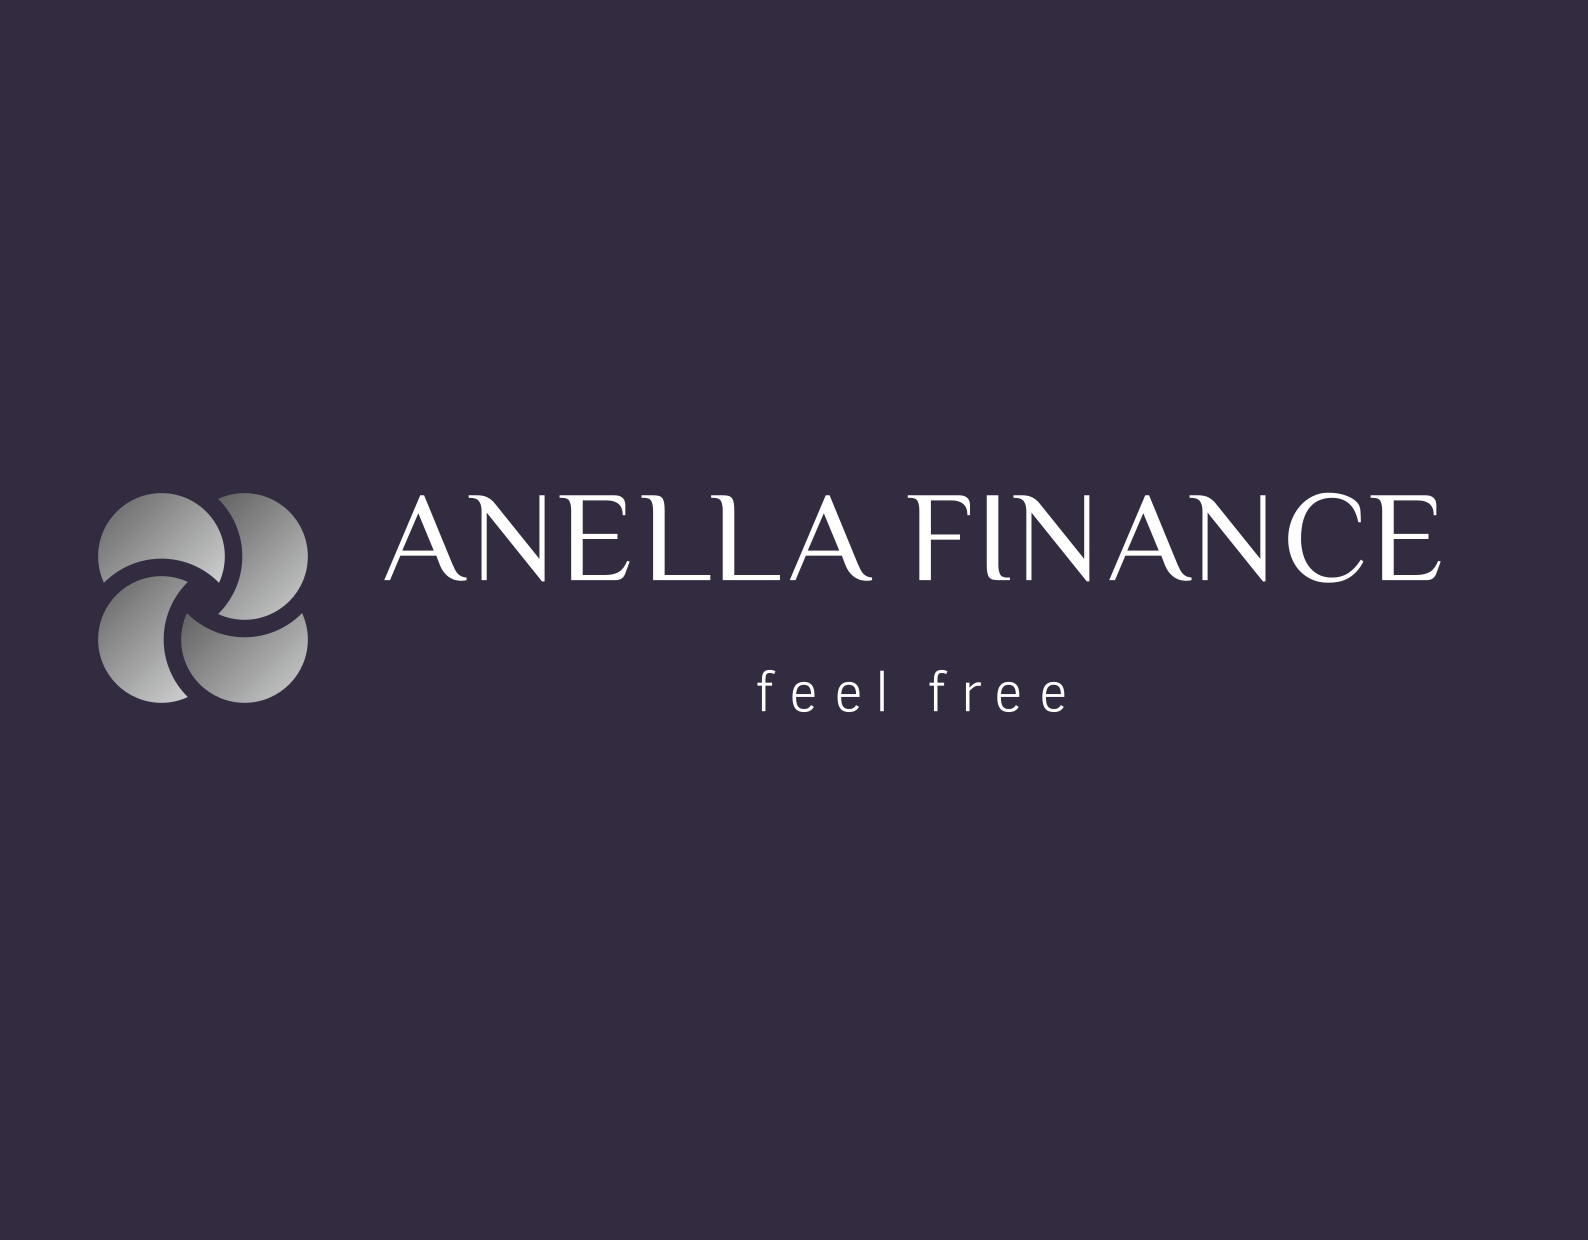 Anella Finance